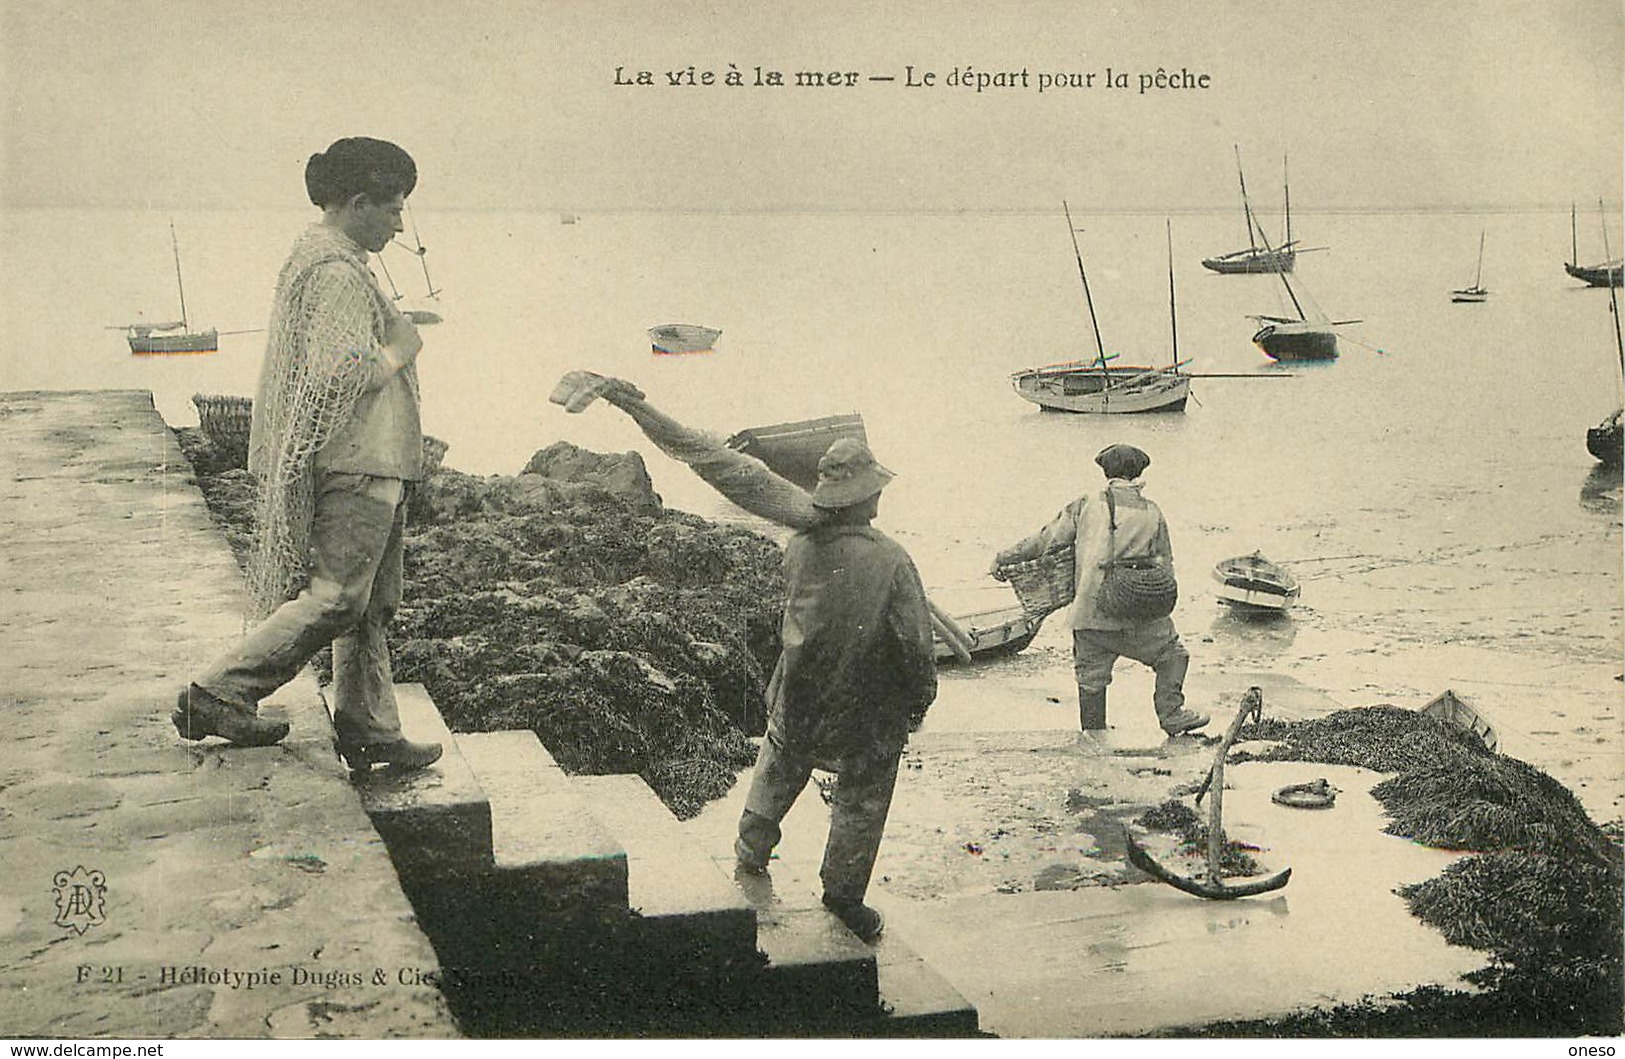 Thèmes - Lot N°393 - Pêcheurs - Pêcheuses - Cartes sur le thème de la pêche - Lots en vrac - Lot de 25 cartes